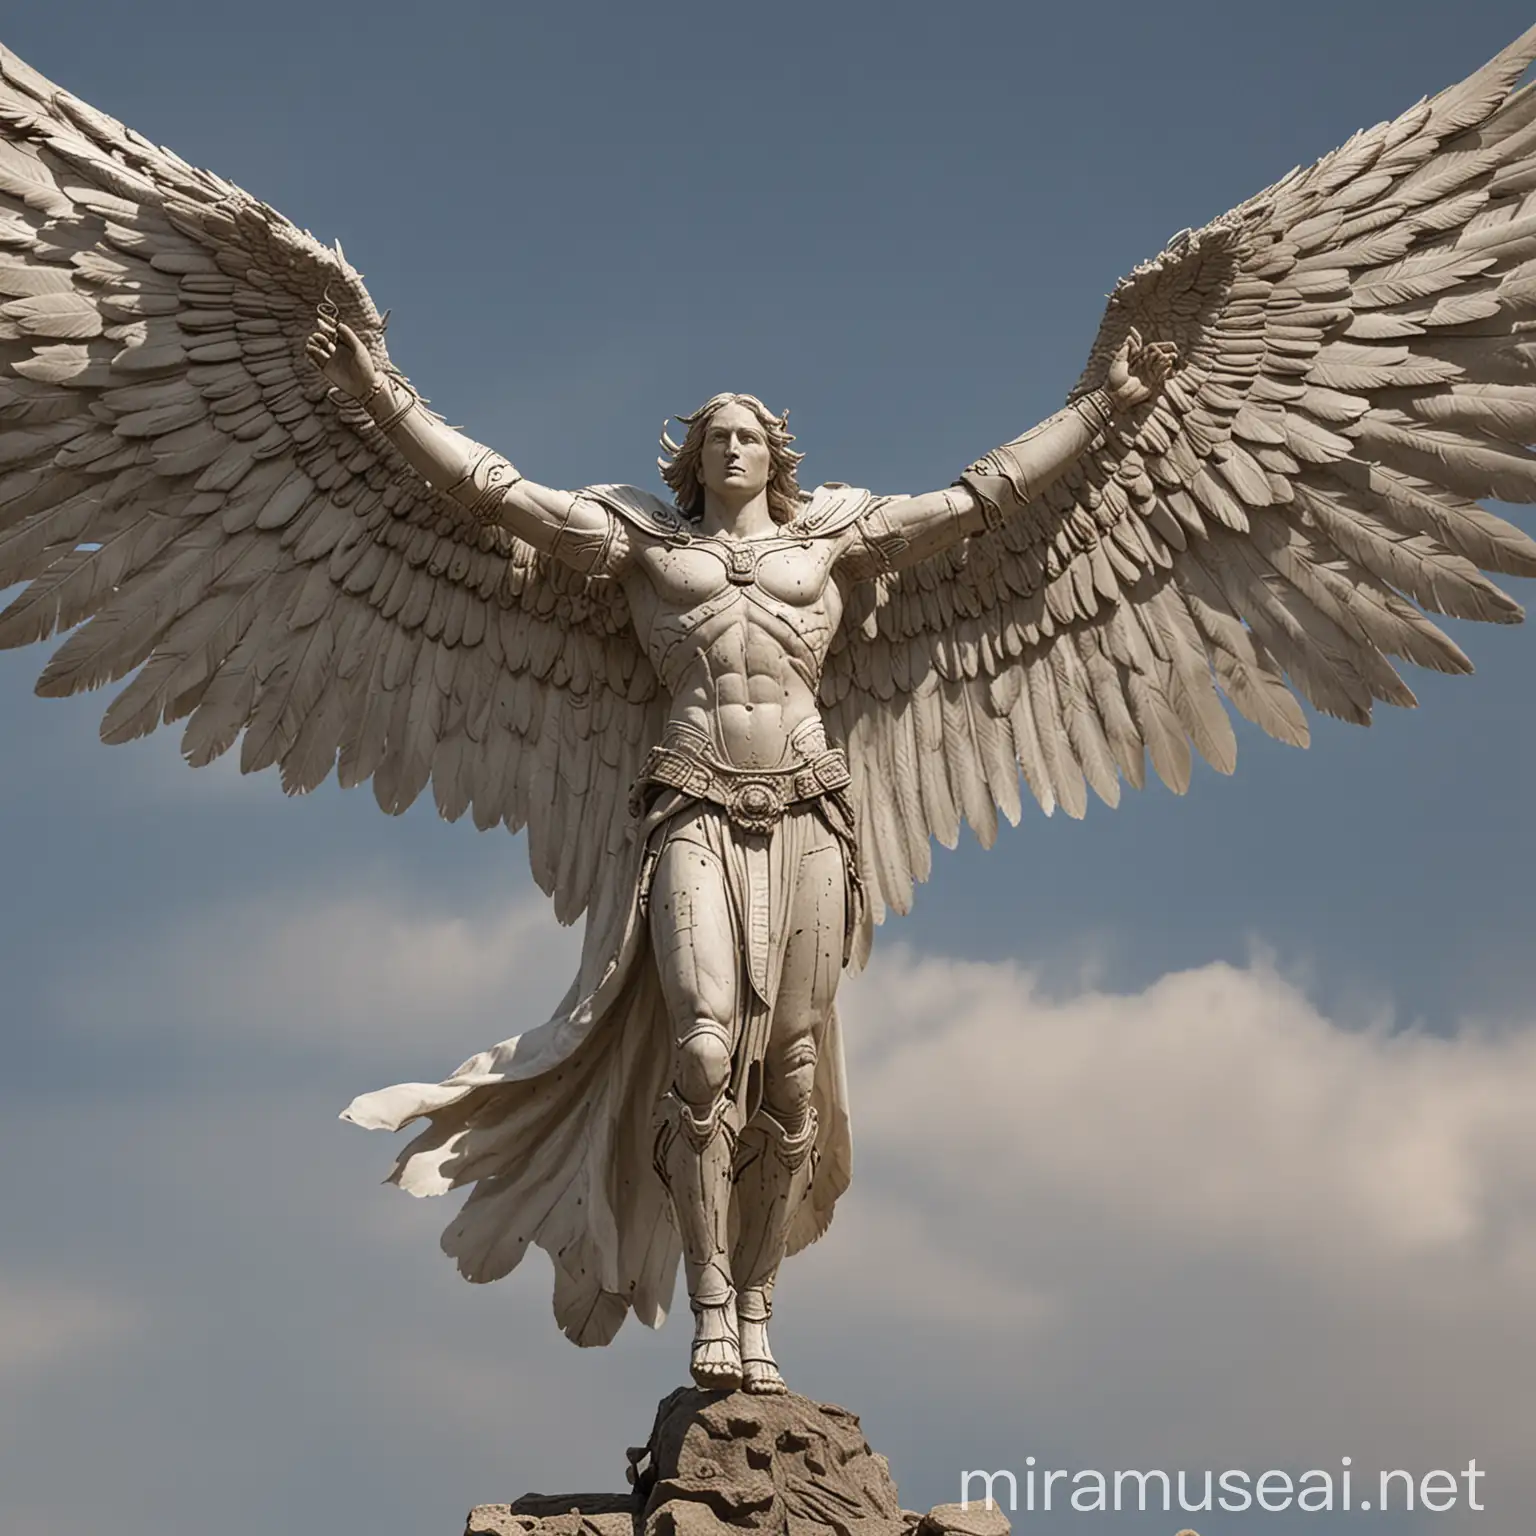 Majestic Archangel Spreading Its Vast Wings